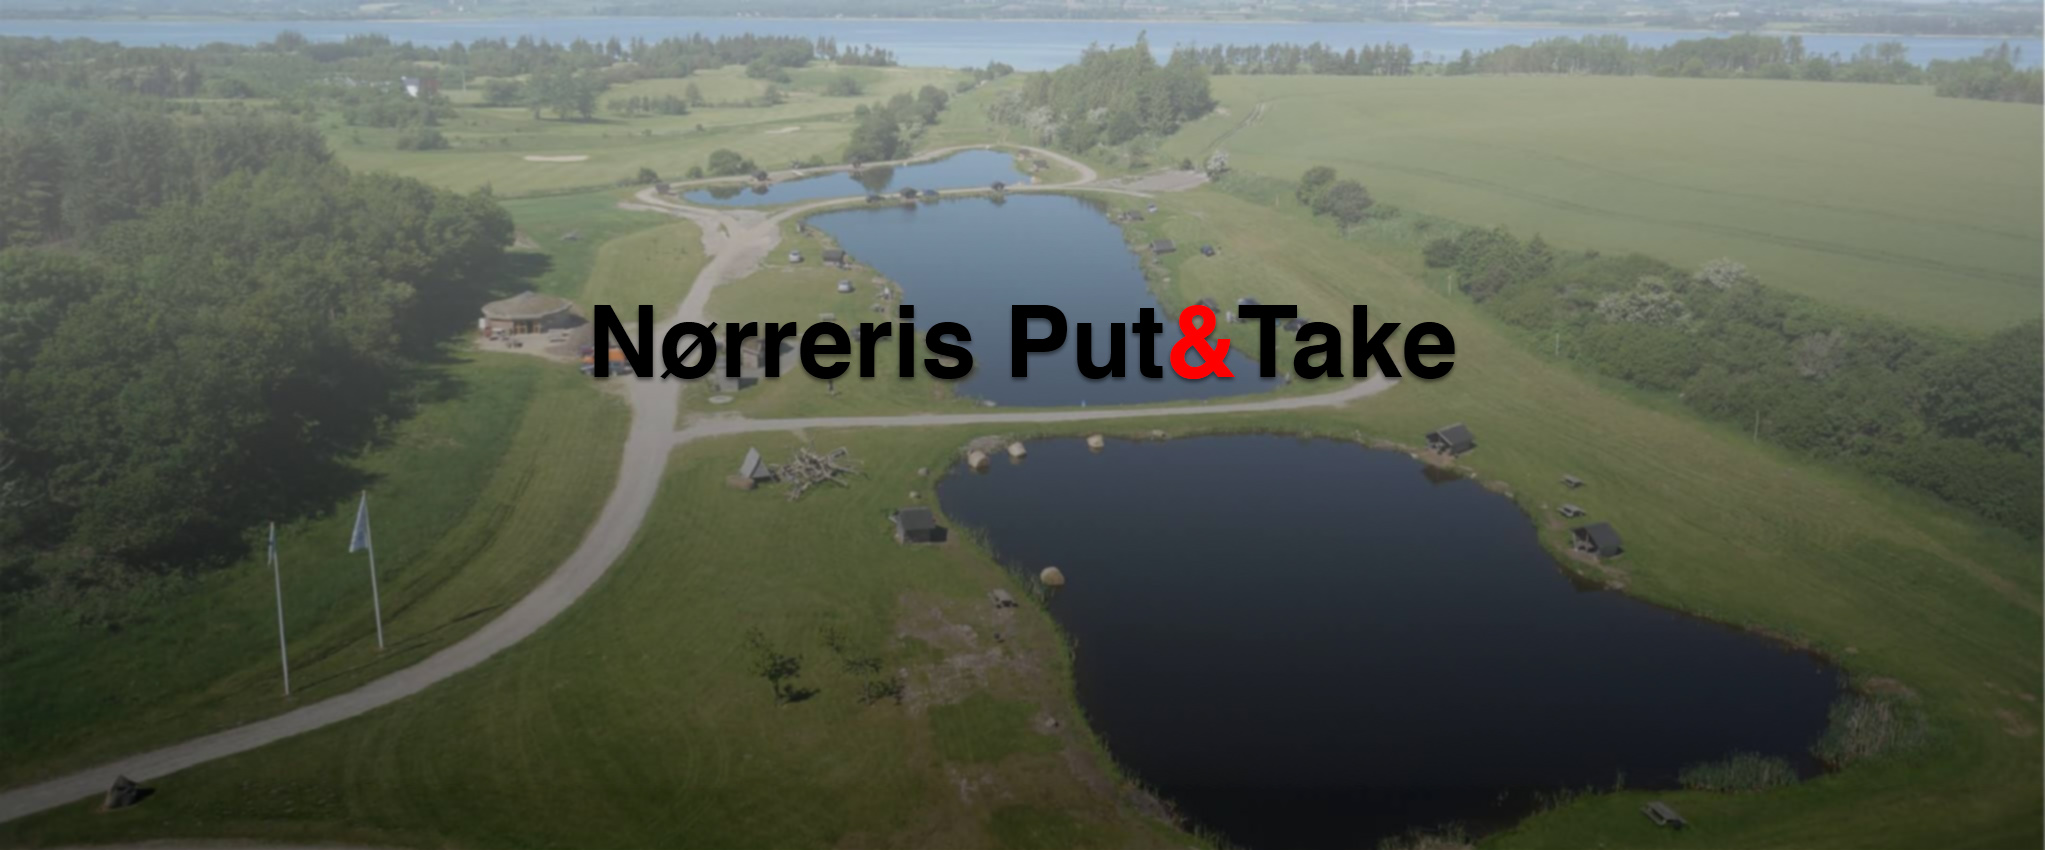 Luftbillede af Put&Take søerne